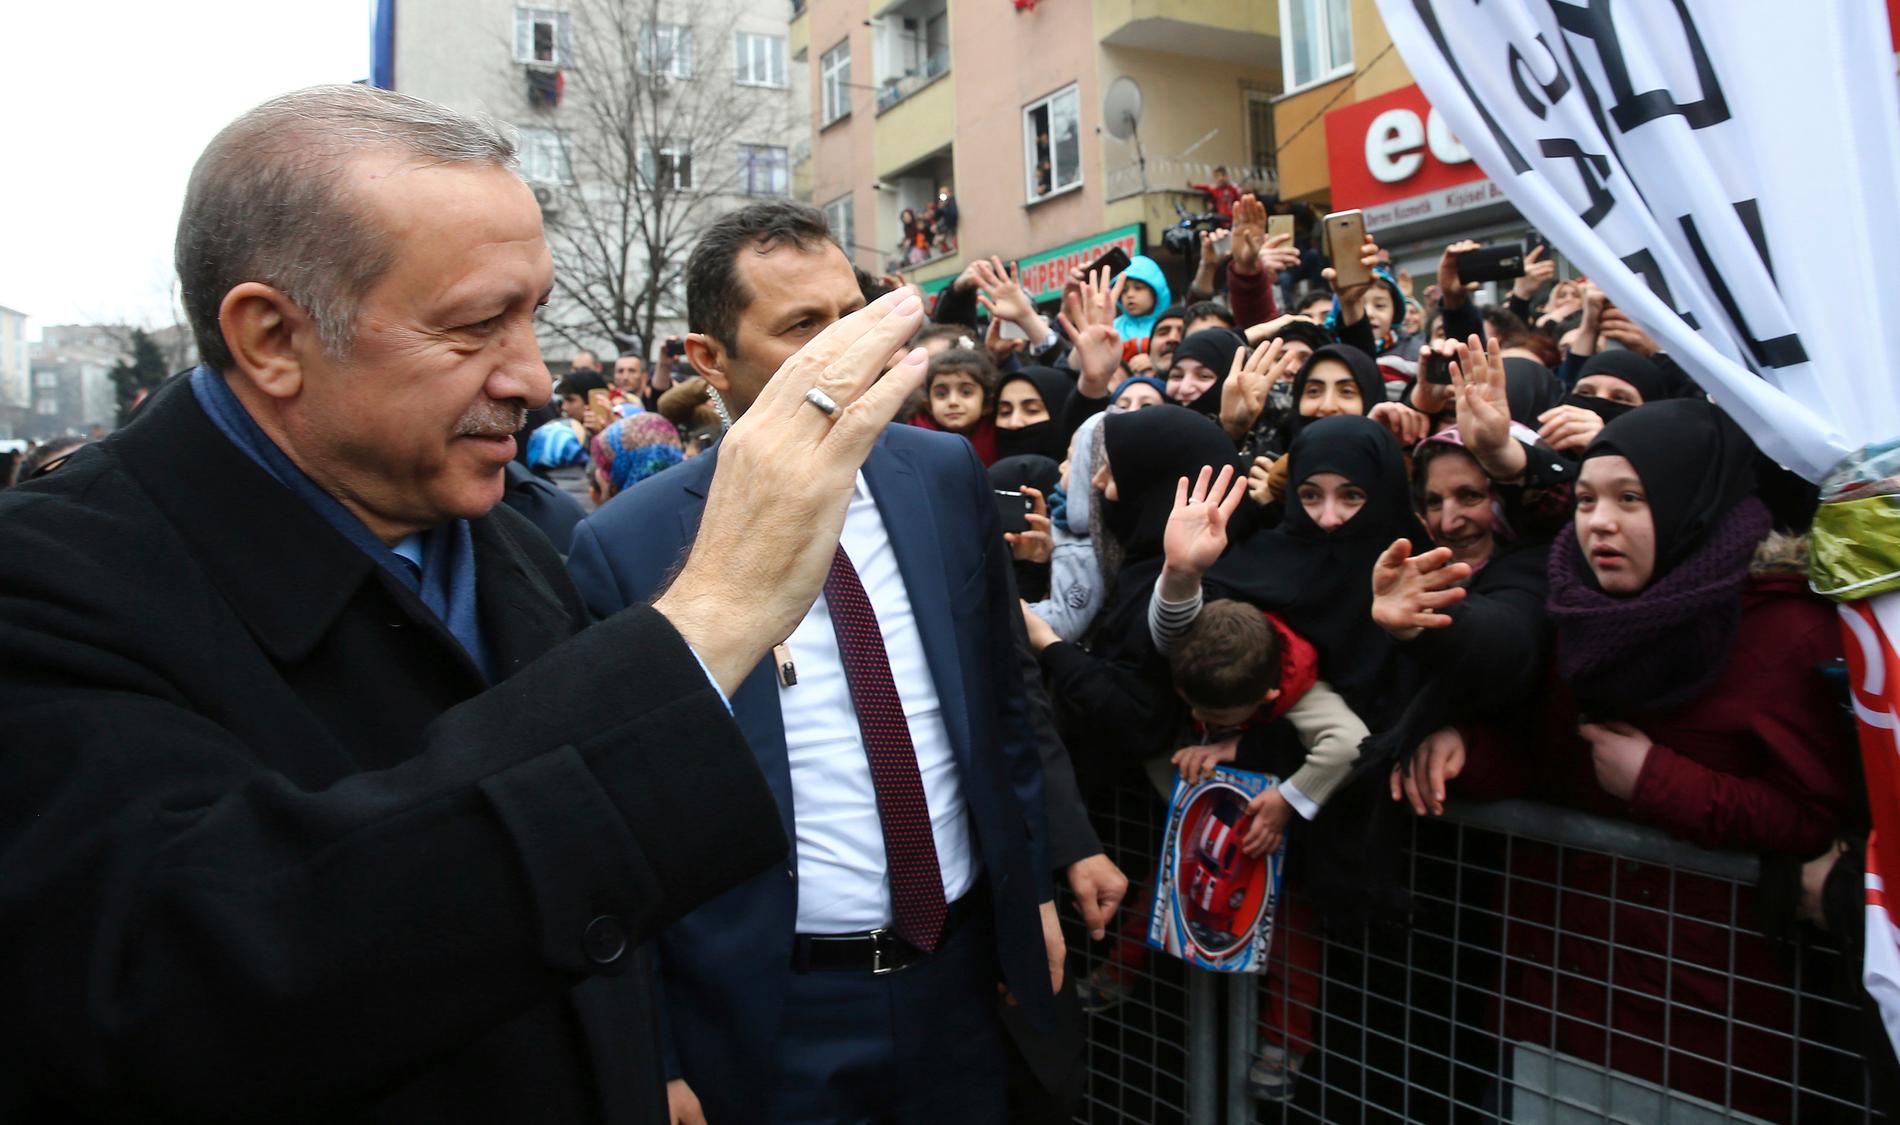 Turkiets president Erdogan under valmöte i Istanbul på lördagen.